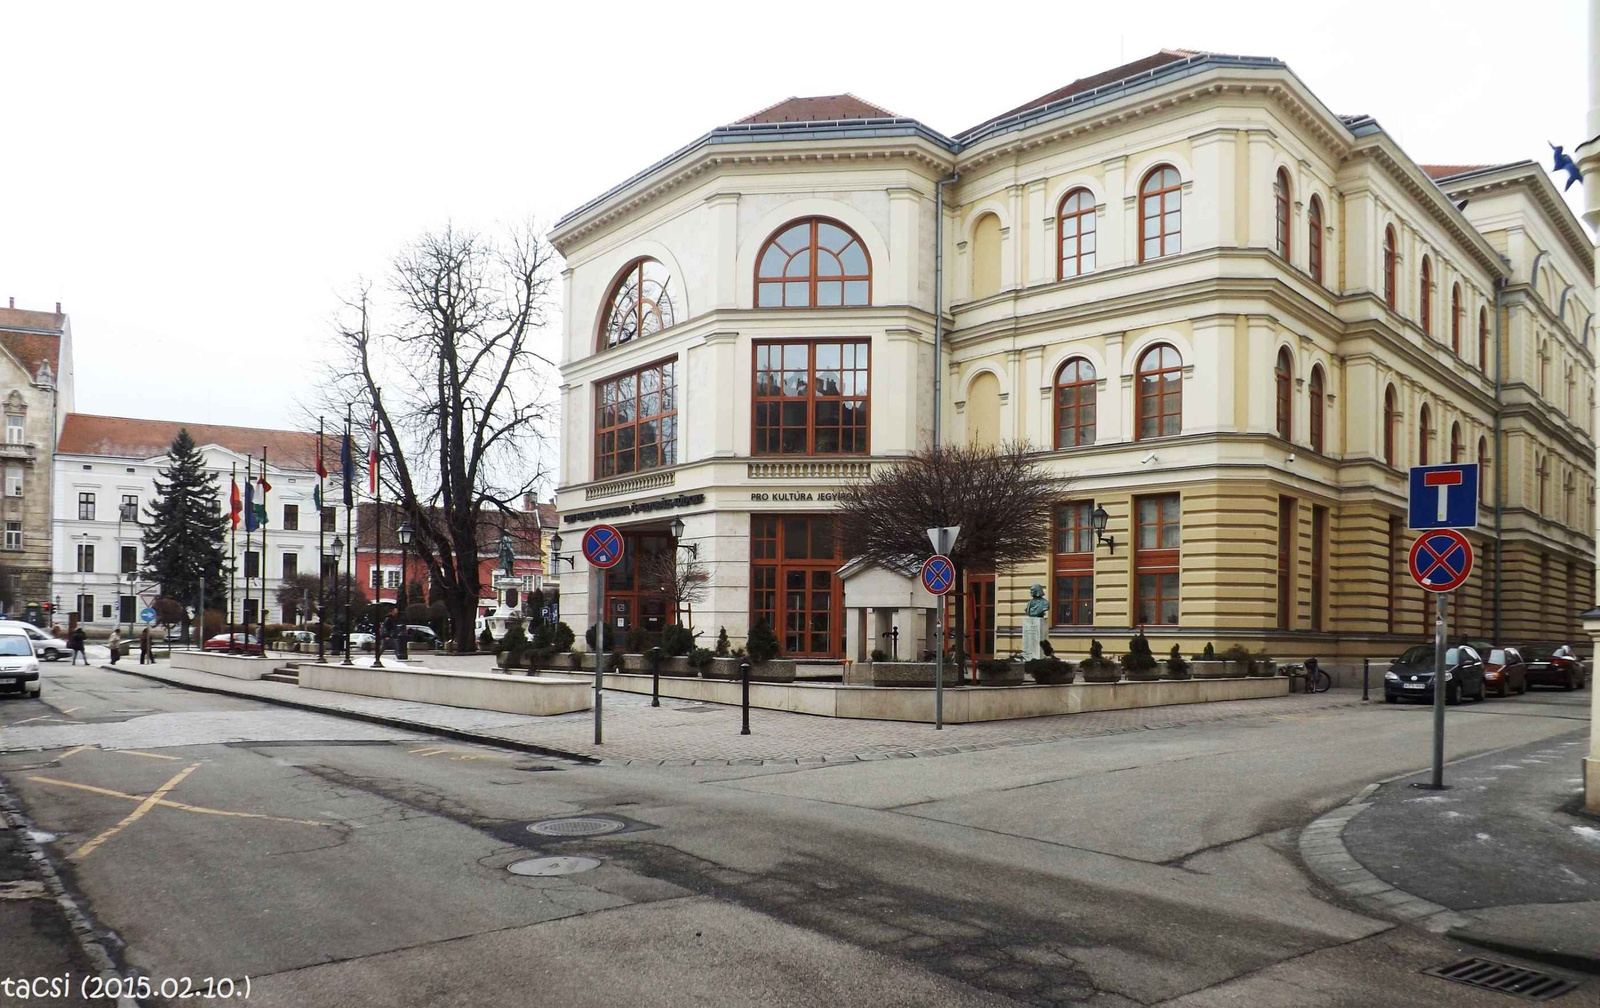 Konferencia központ és egy kevés Széchenyi tér